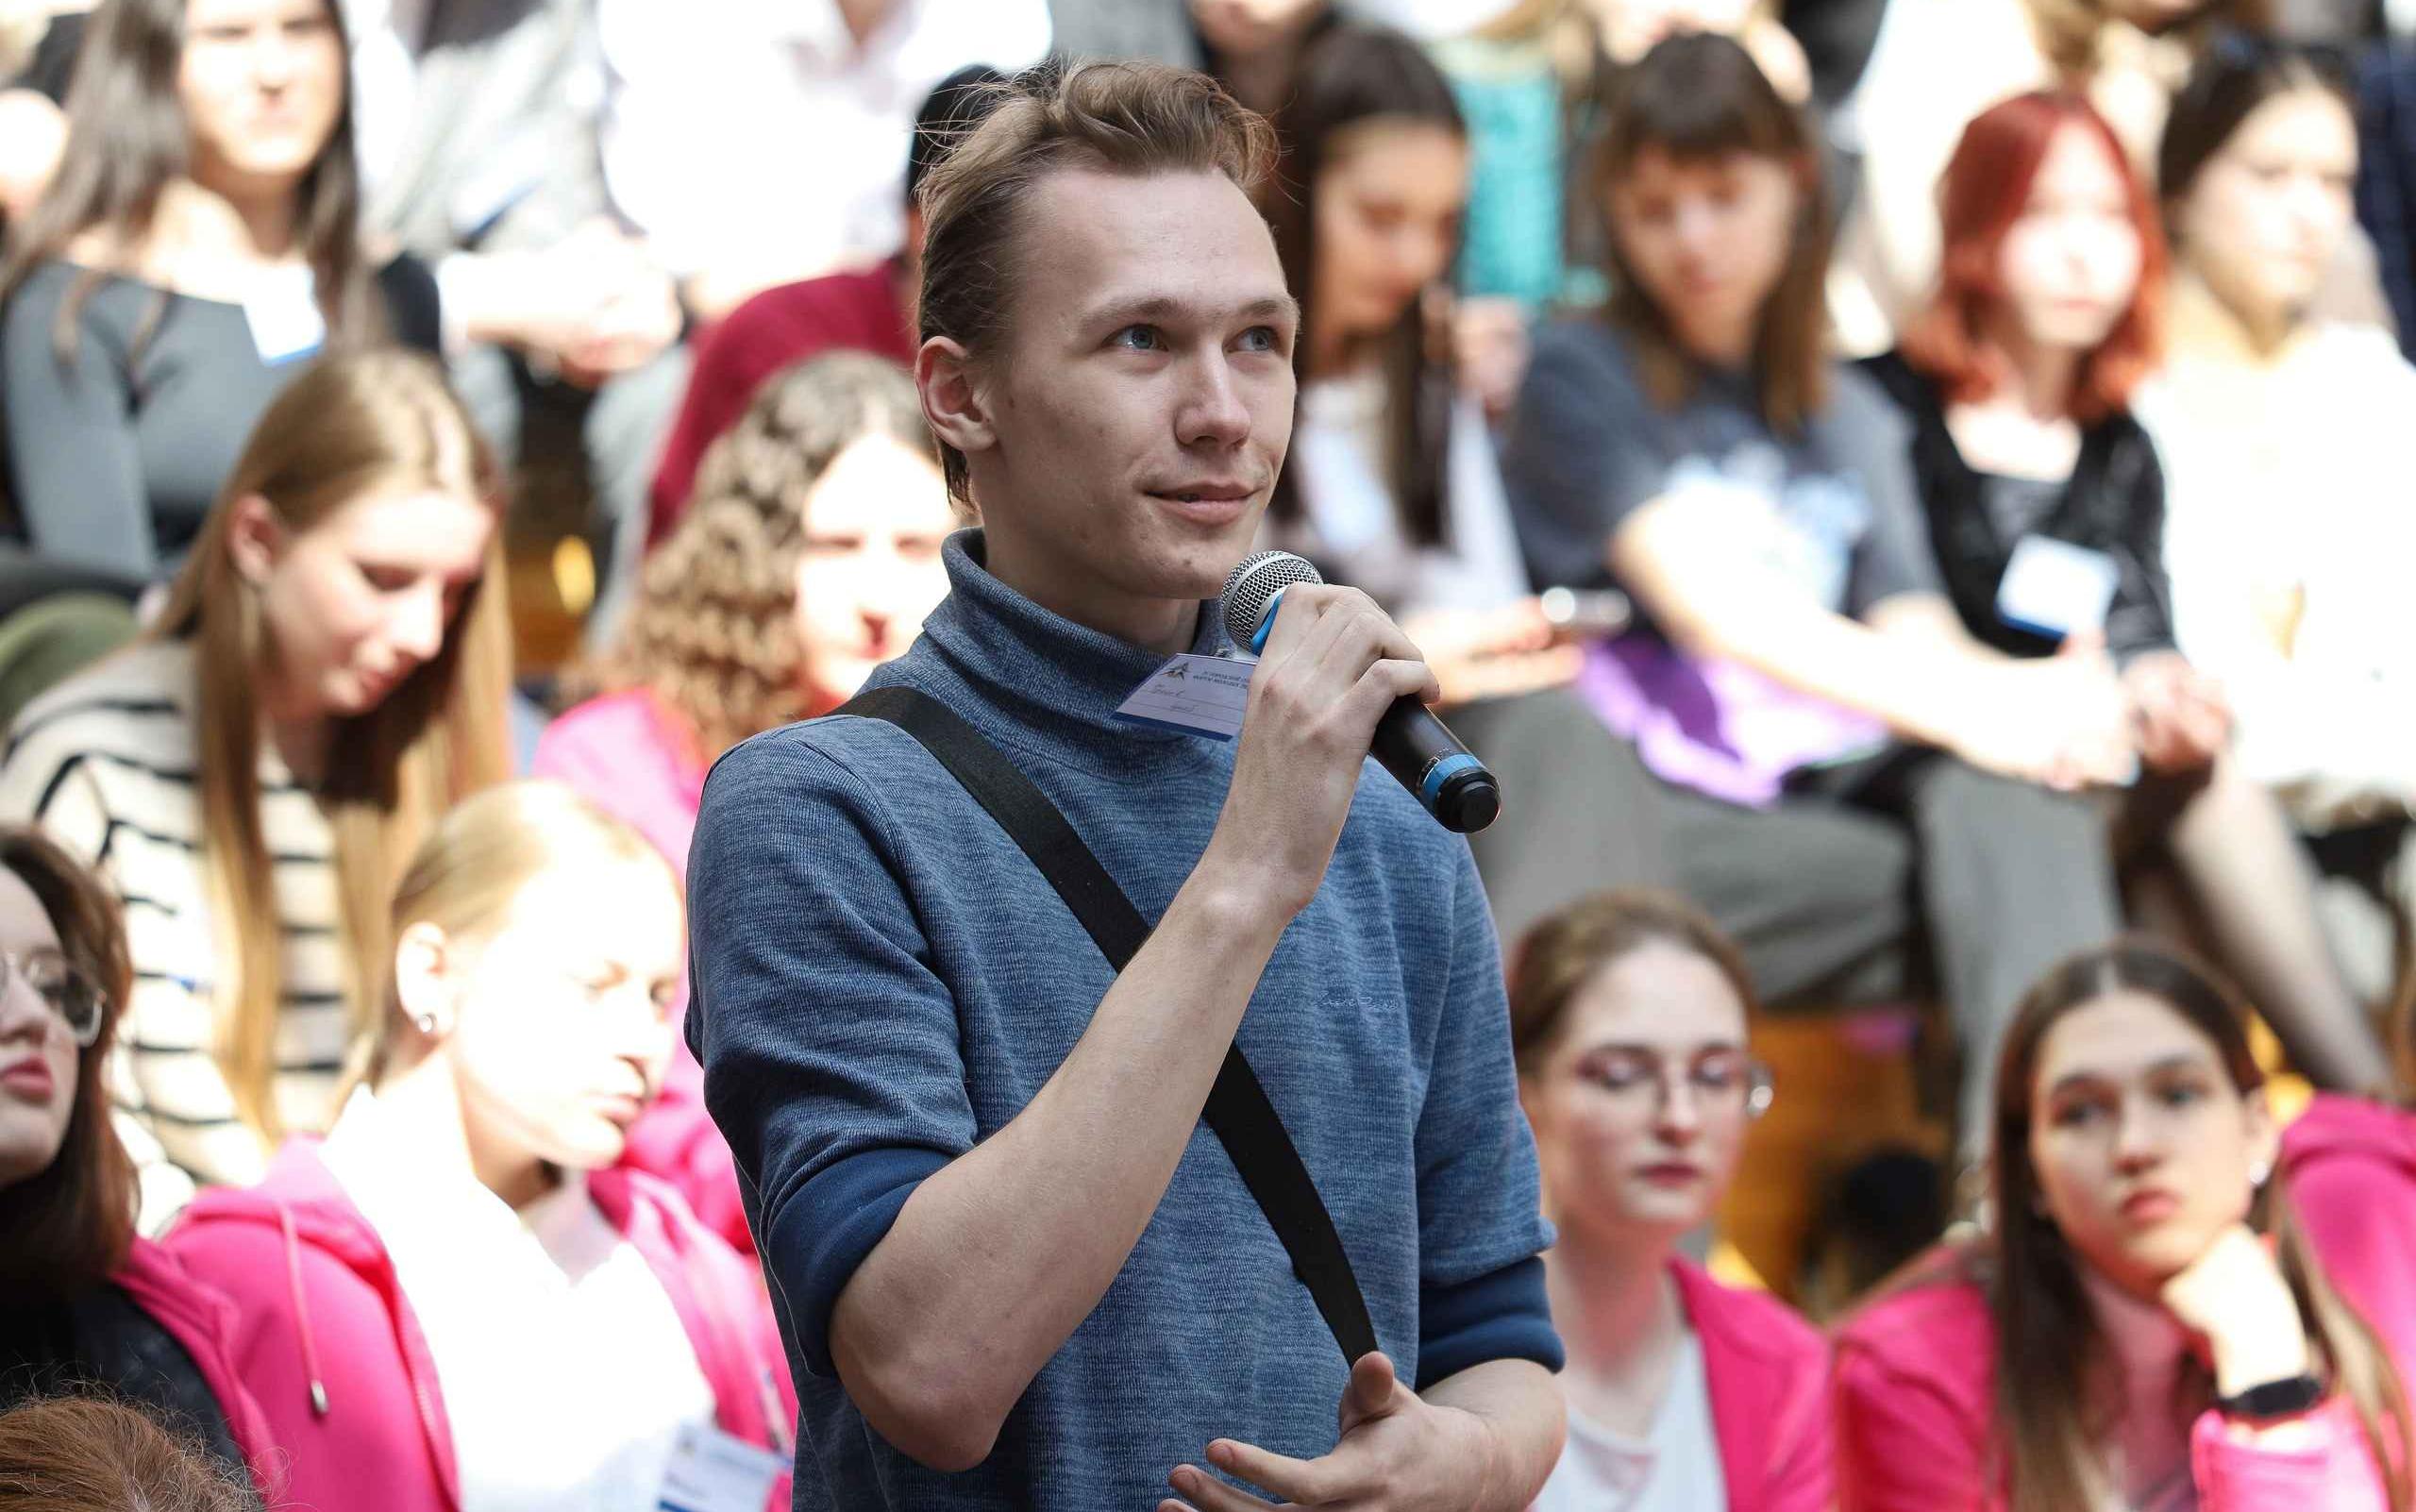 ФОТО к новости: Более 250 молодых и будущих педагогов встретились на форуме в Новосибирске